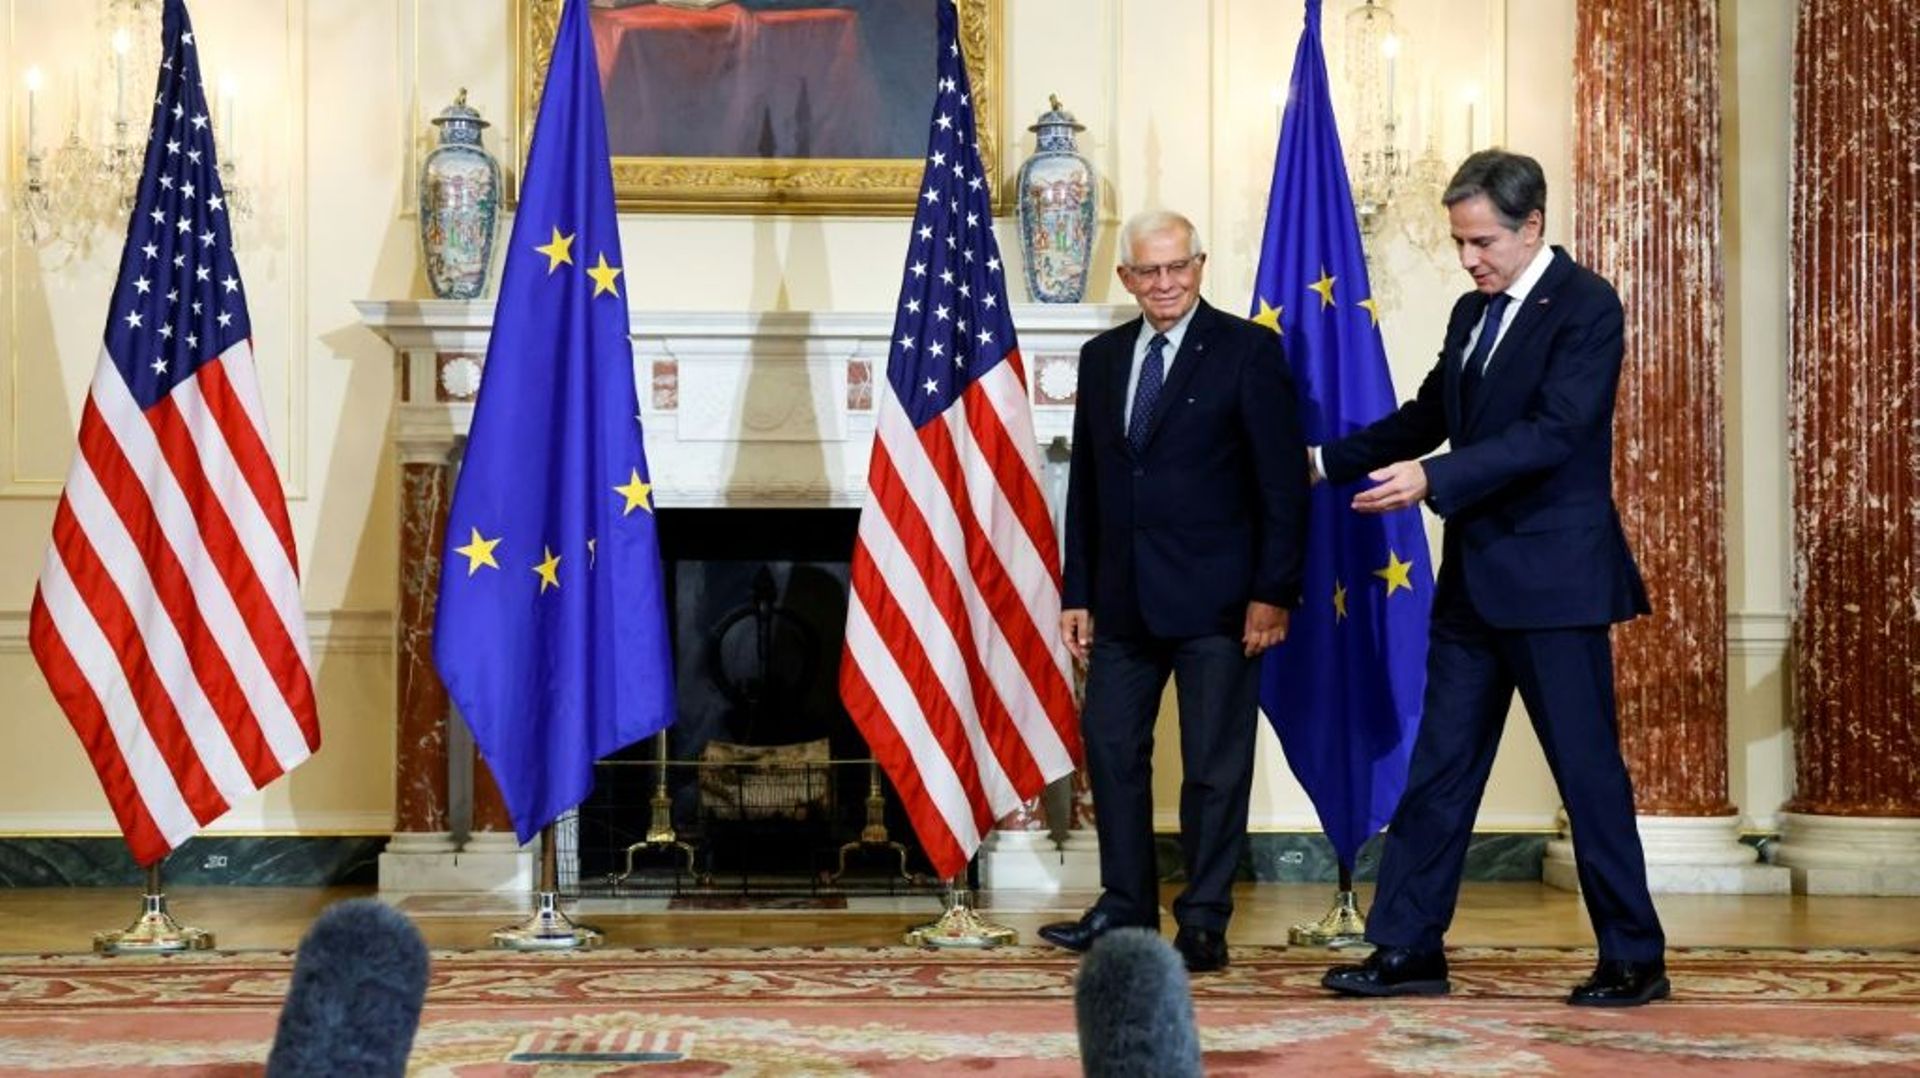 Le chef de la diplomatie américaine Antony Blinken reçoit son homologue de l'Union européenne Josep Borrell le 14 octobre 2021 à Washington